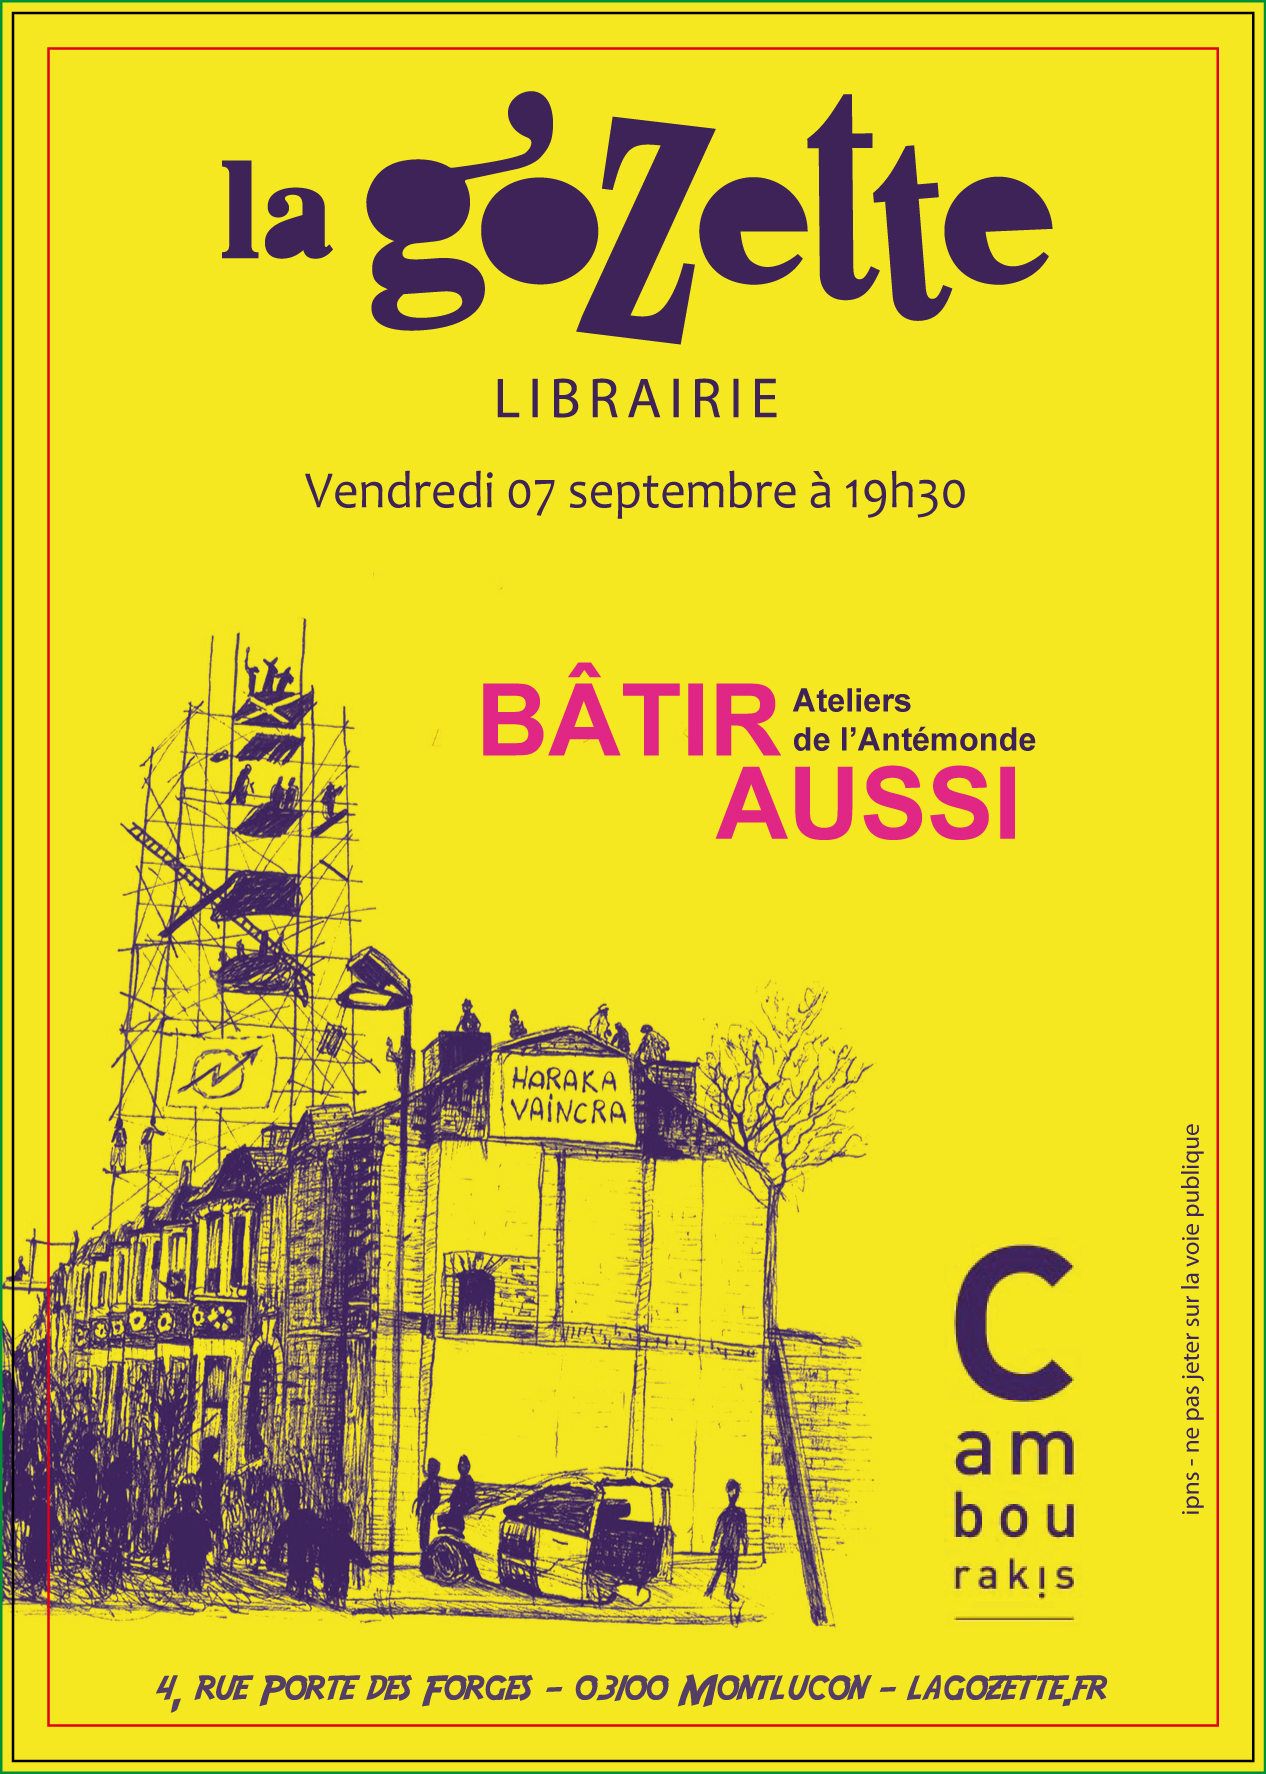 Flyer pour annoncer le labo-fiction à Montluçon (la Gozette) le 7 septembre 2018 à 19h30